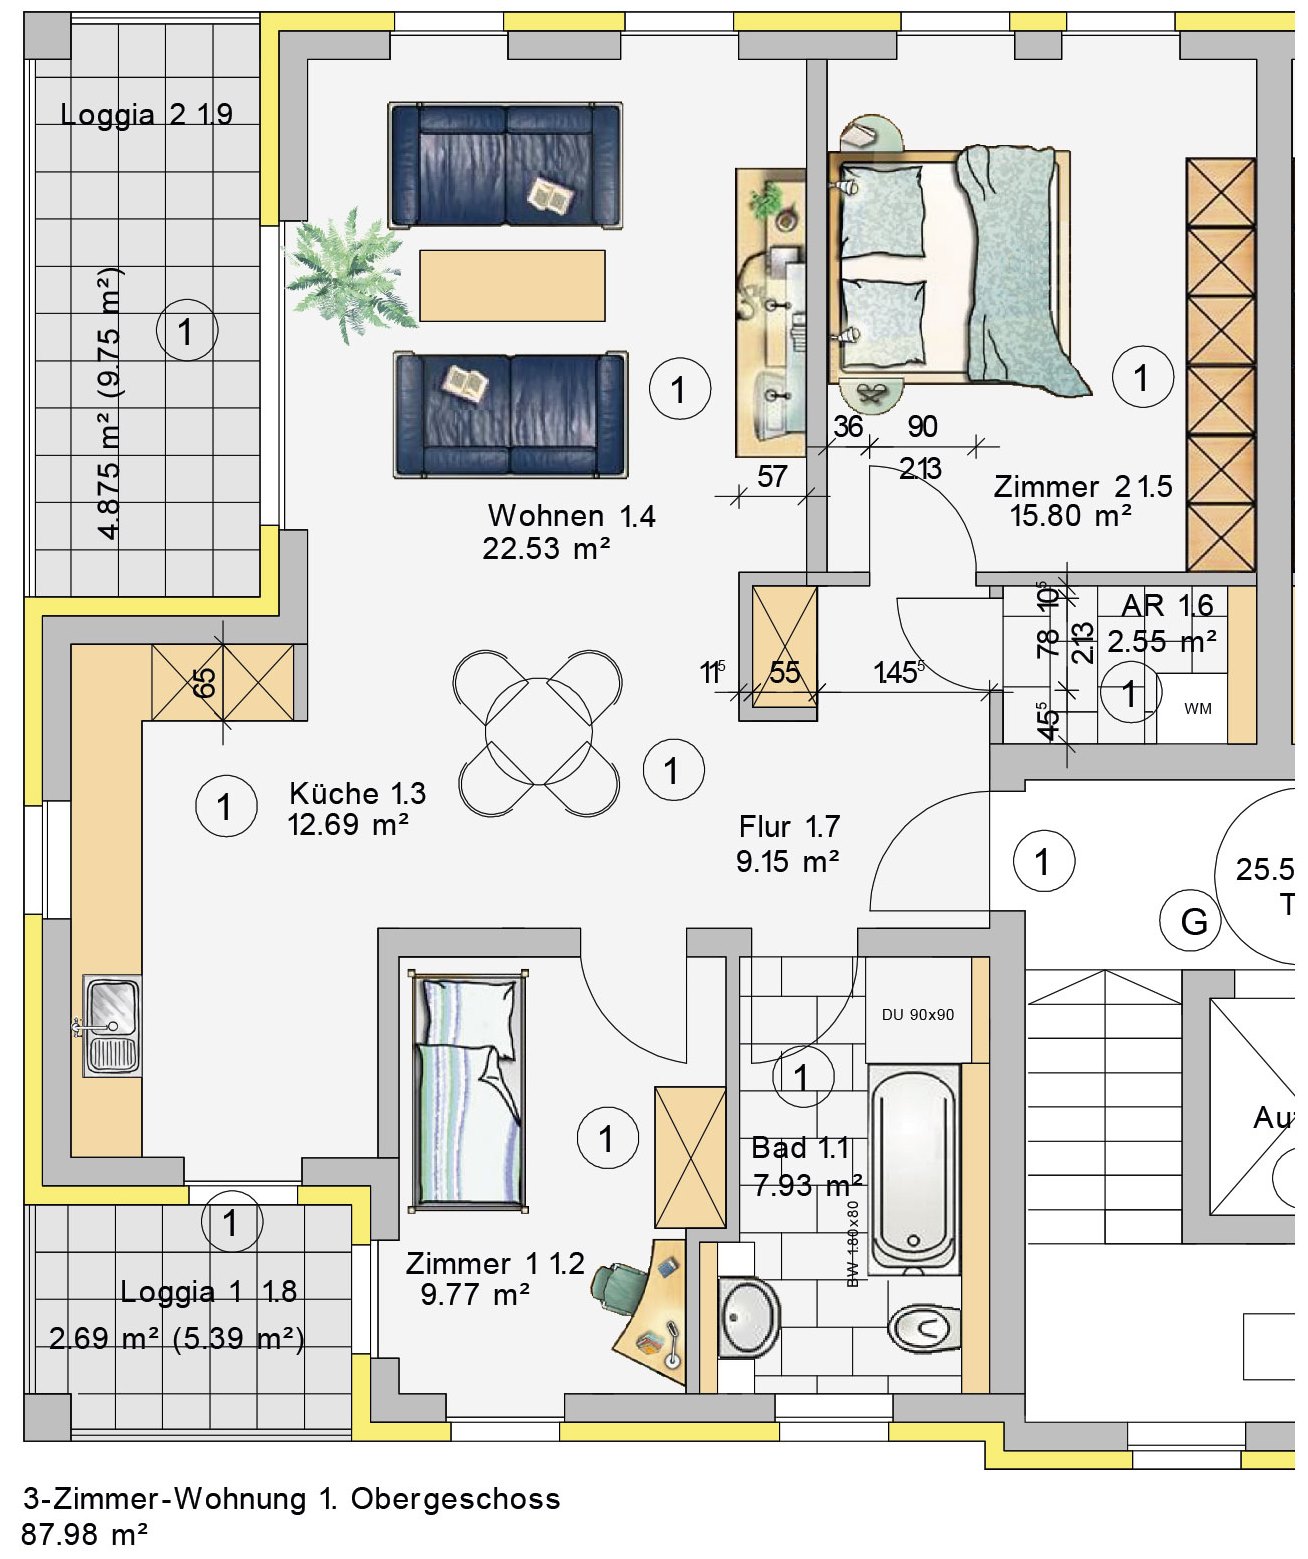 3-Zimmer-Wohnung im 1. Obergeschoss (W1)